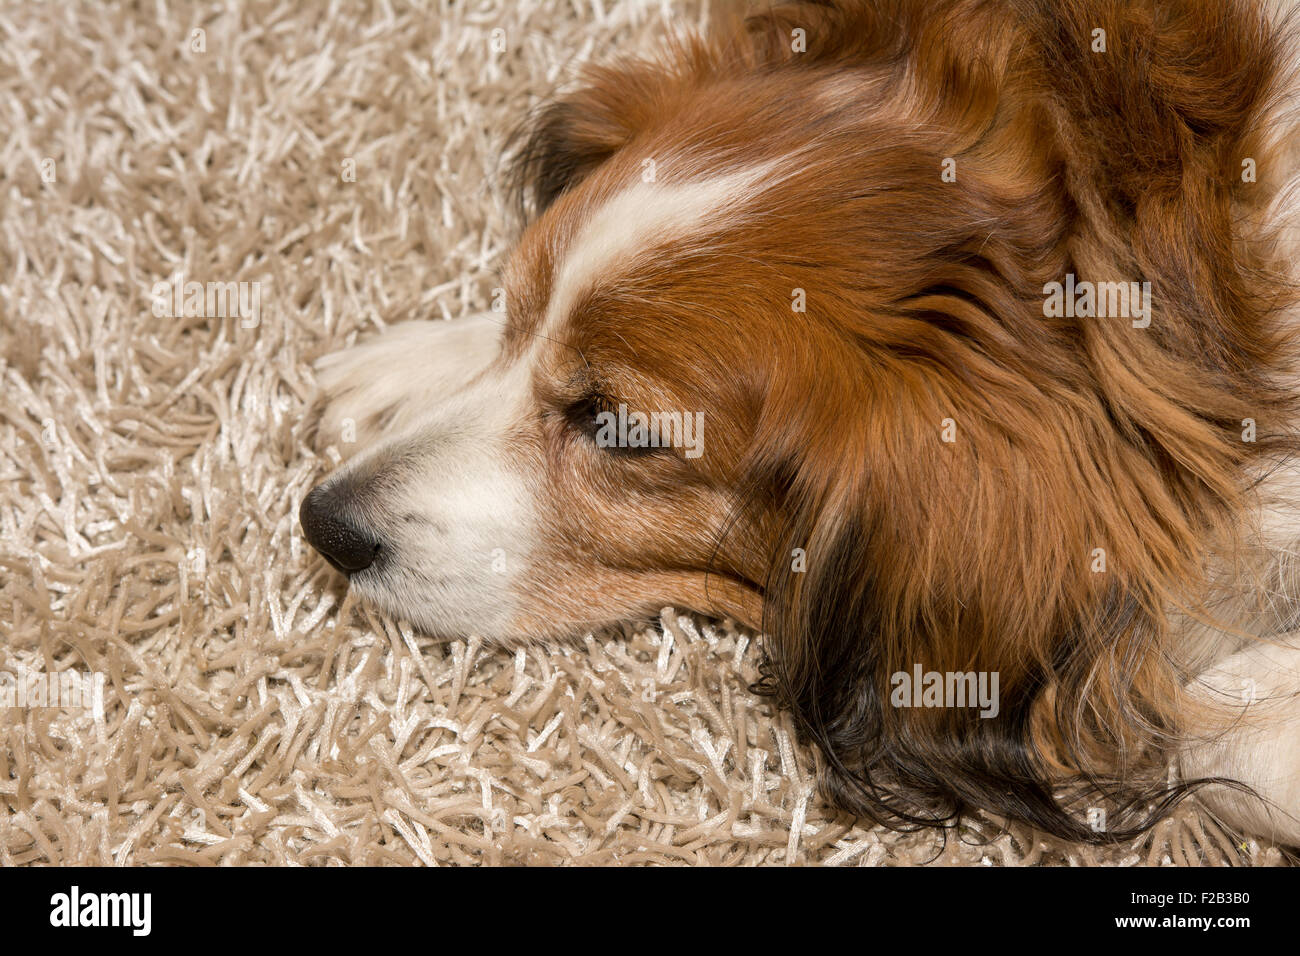 Sad dog laying on carpet Stock Photo